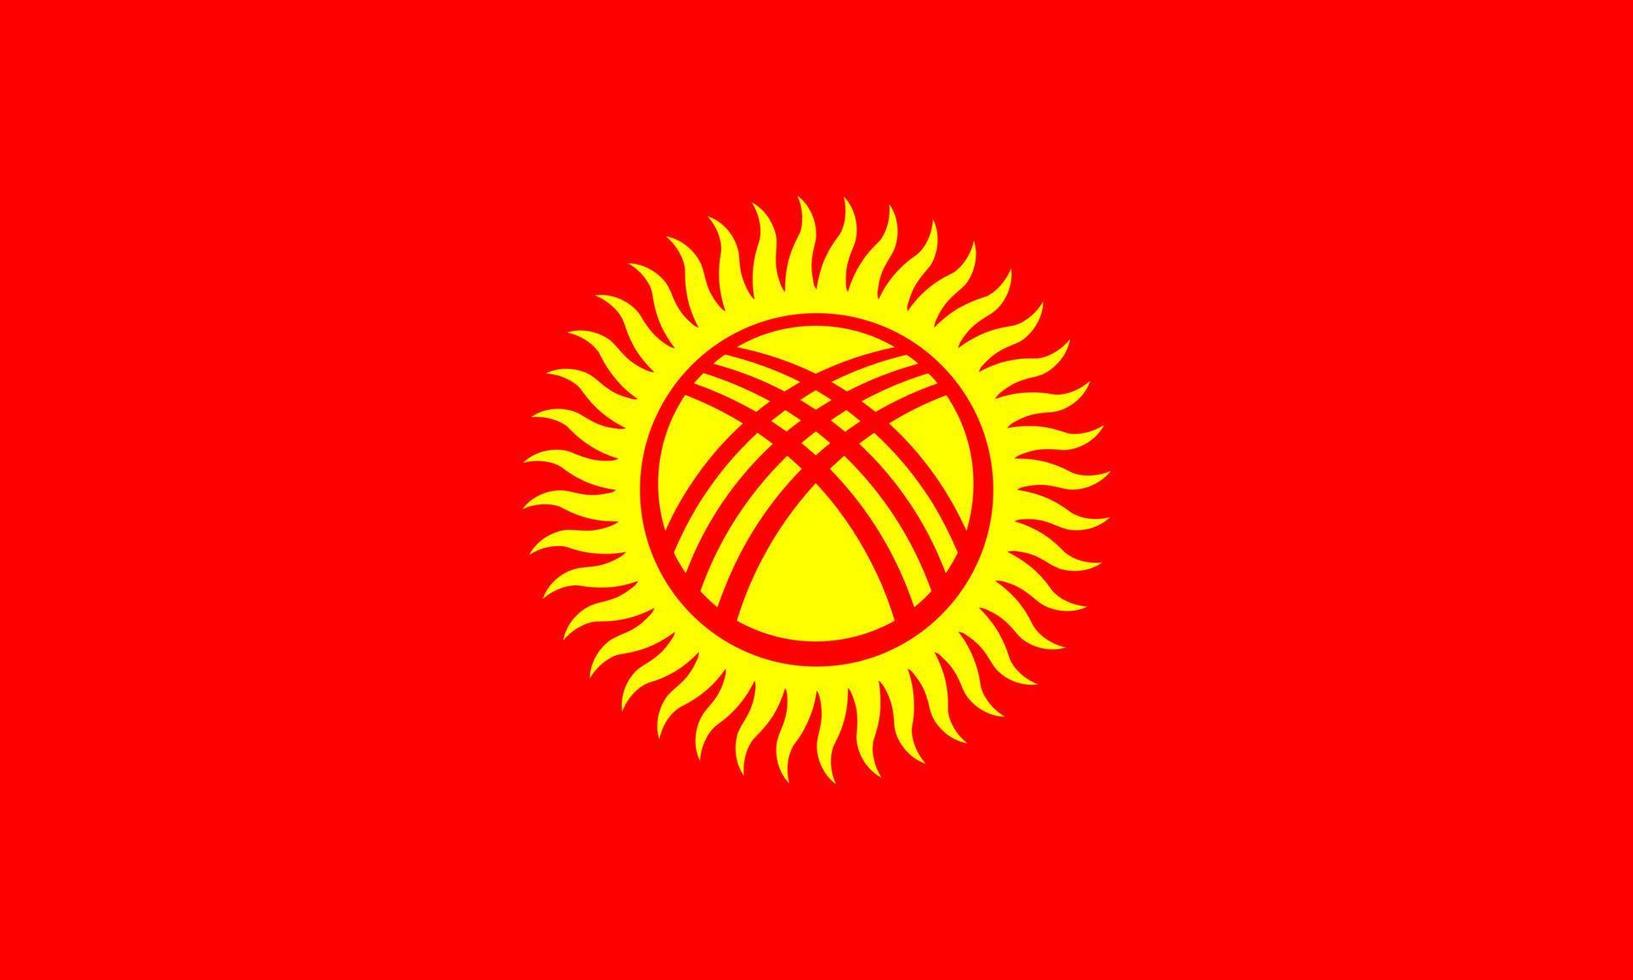 vettore di bandiera del Kirghizistan